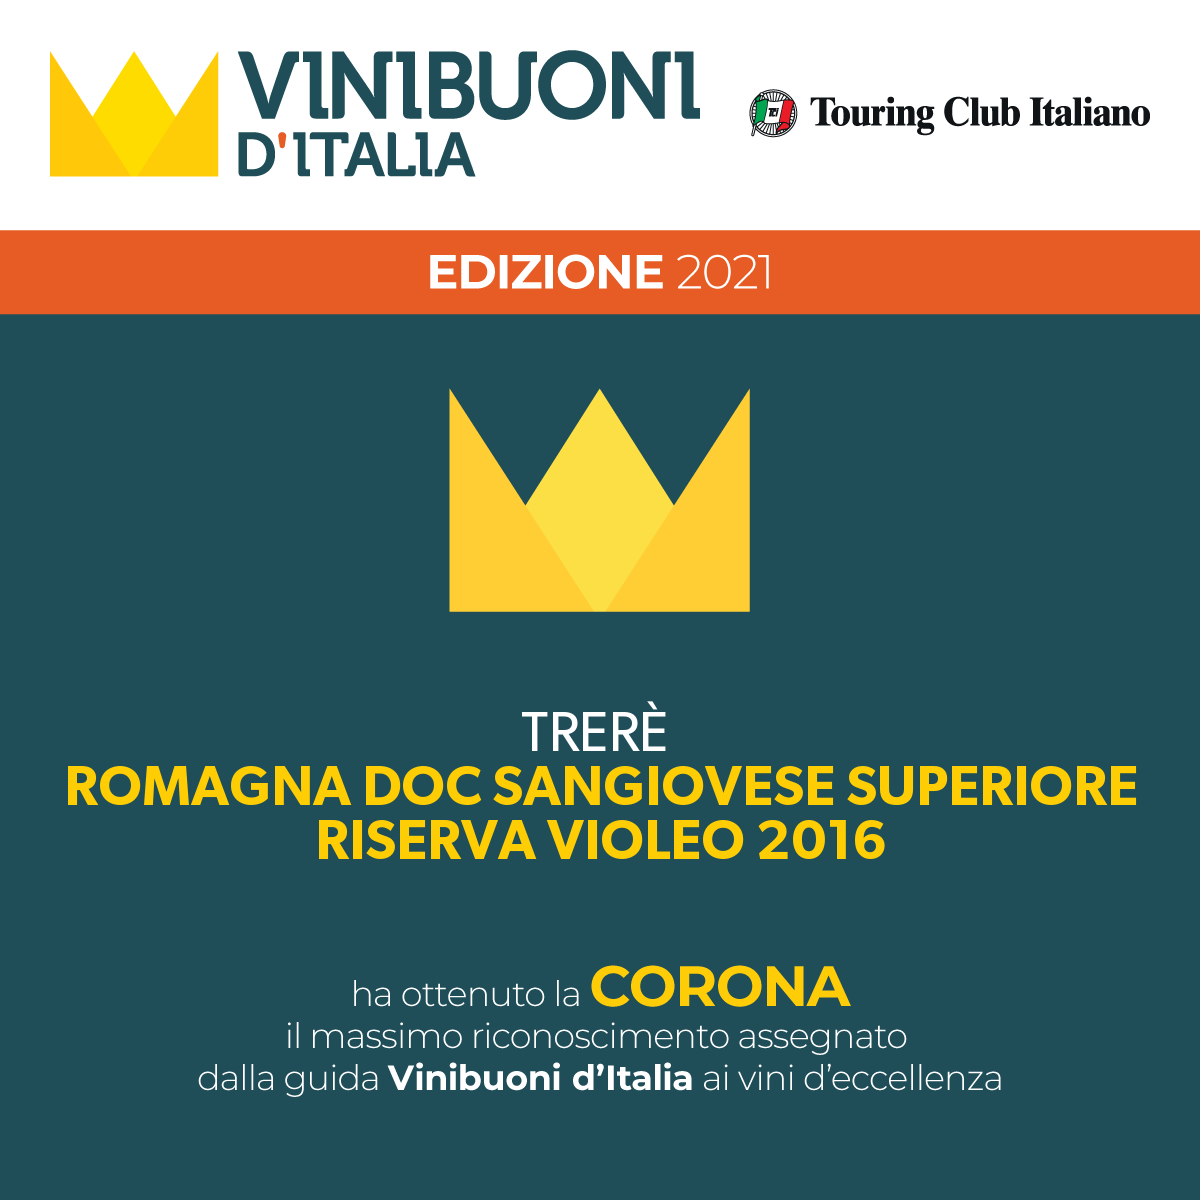 ViniBuoniD'Italia21 Violeo